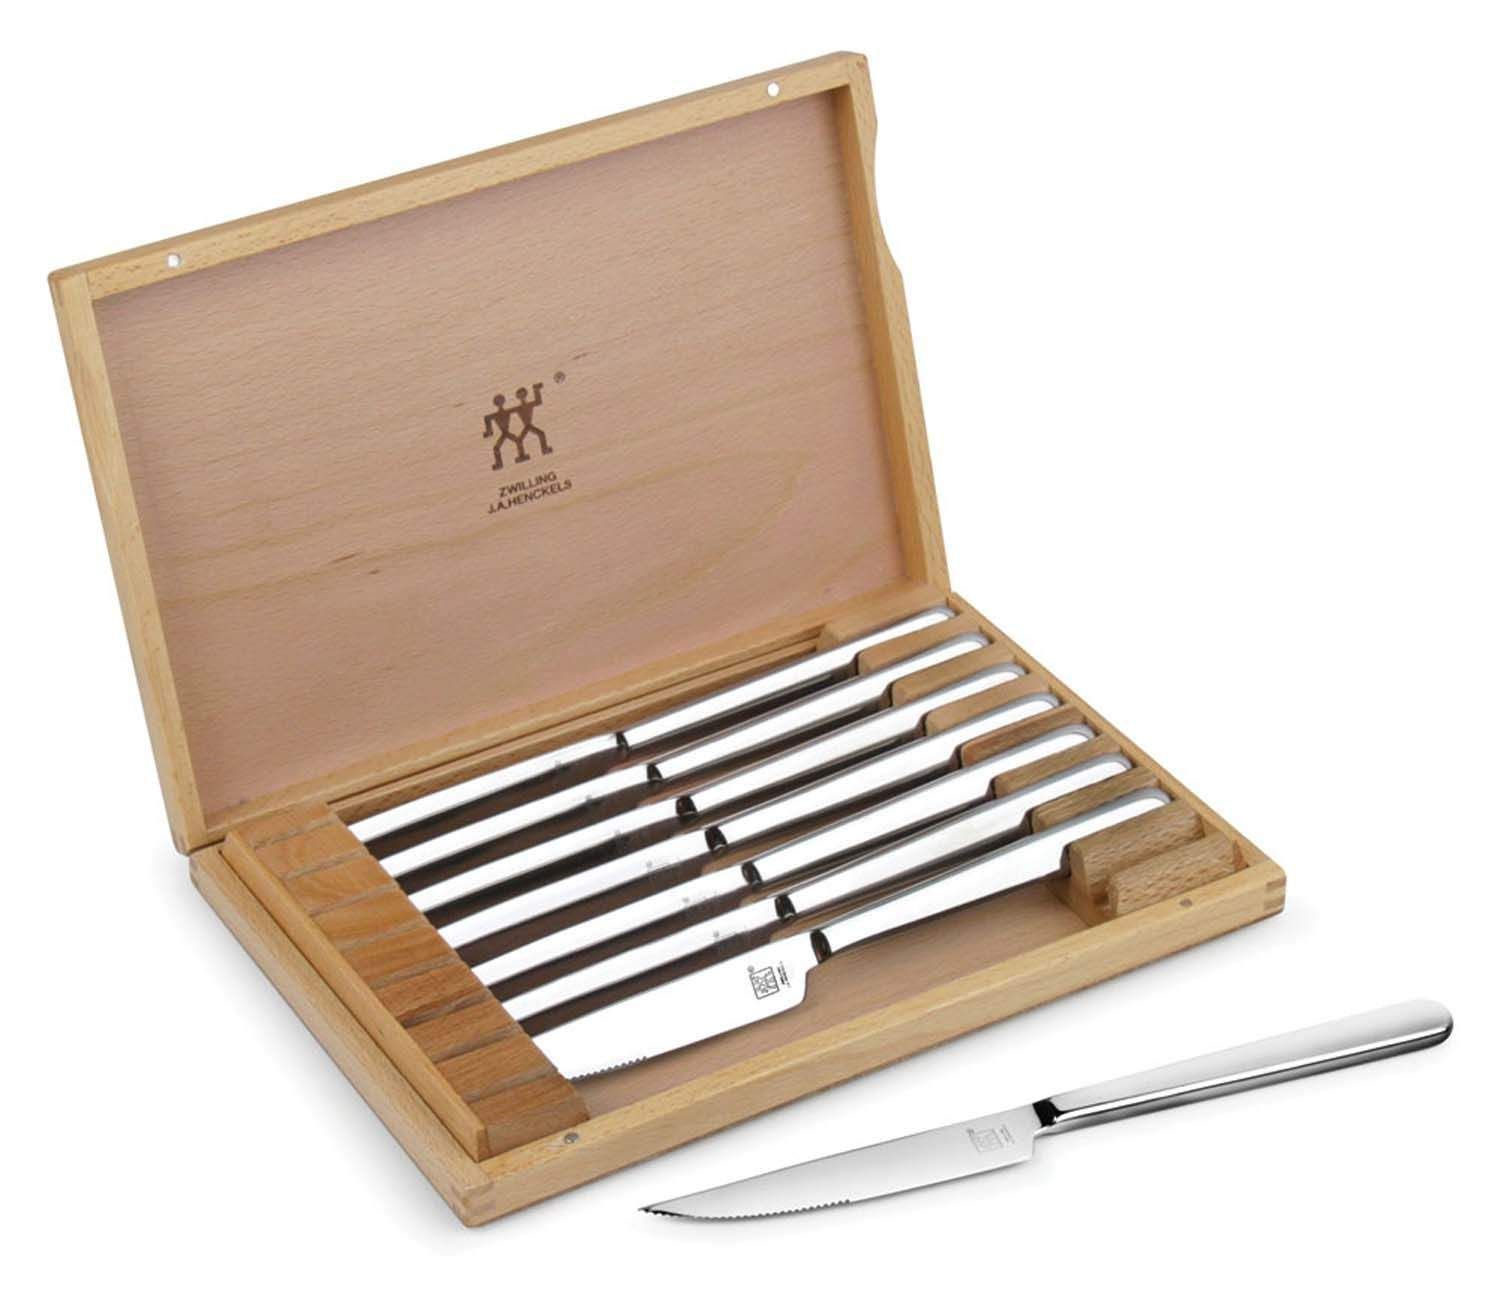 Zwilling J.A. Henckels Stainless Steel 8-Piece Steak Knife Set